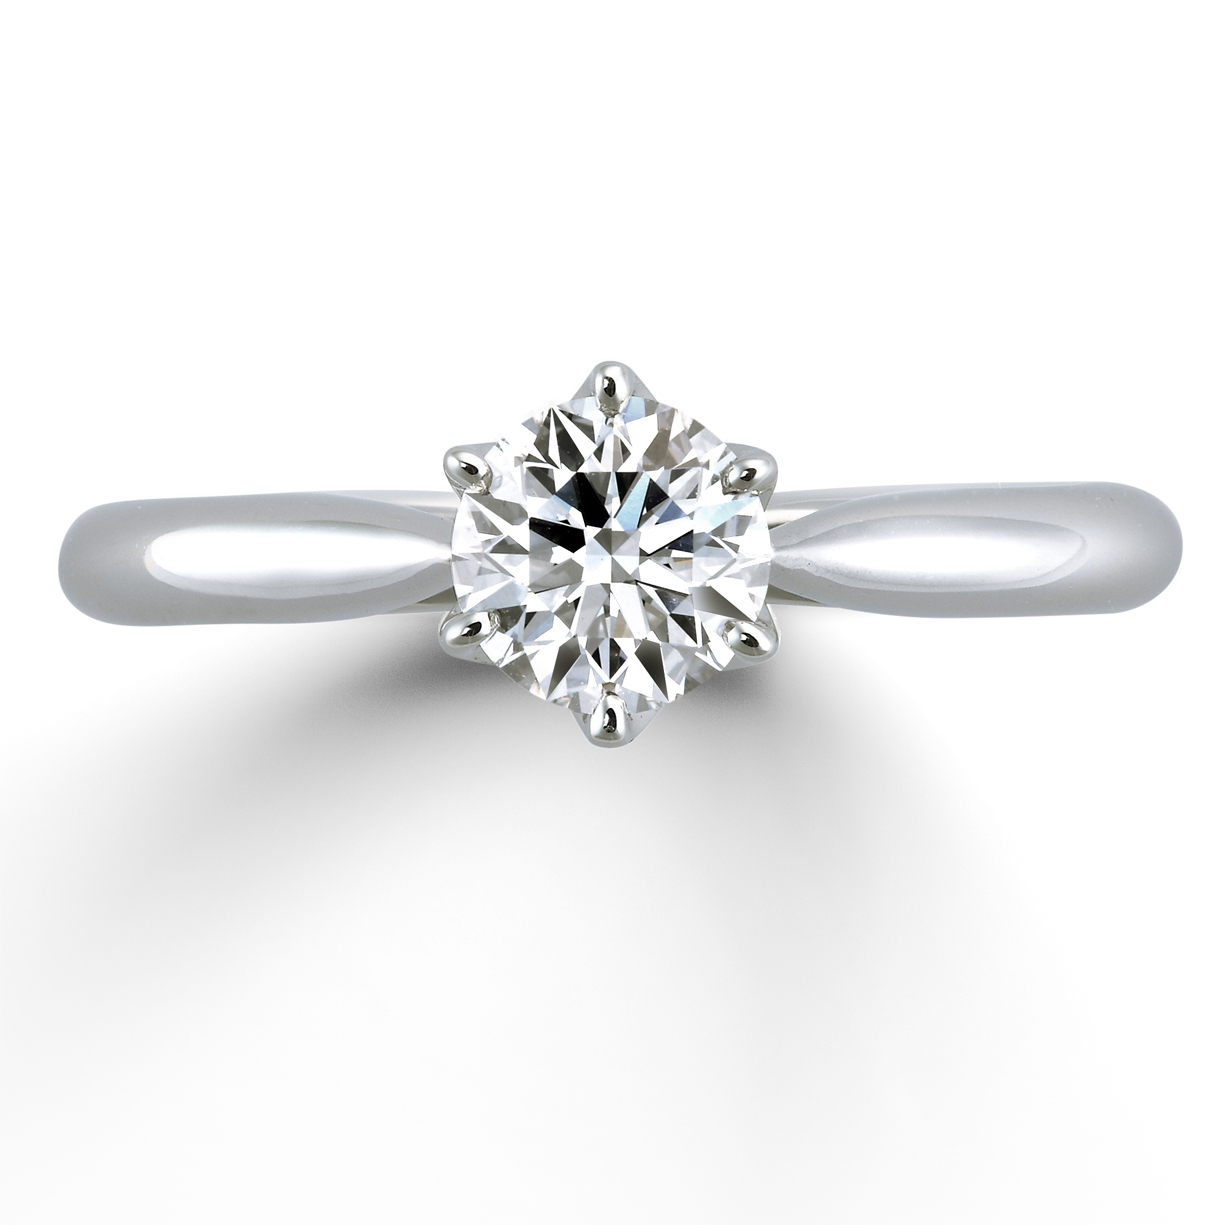 嚴格的基準中所被選定的鑽石作為訂婚戒指